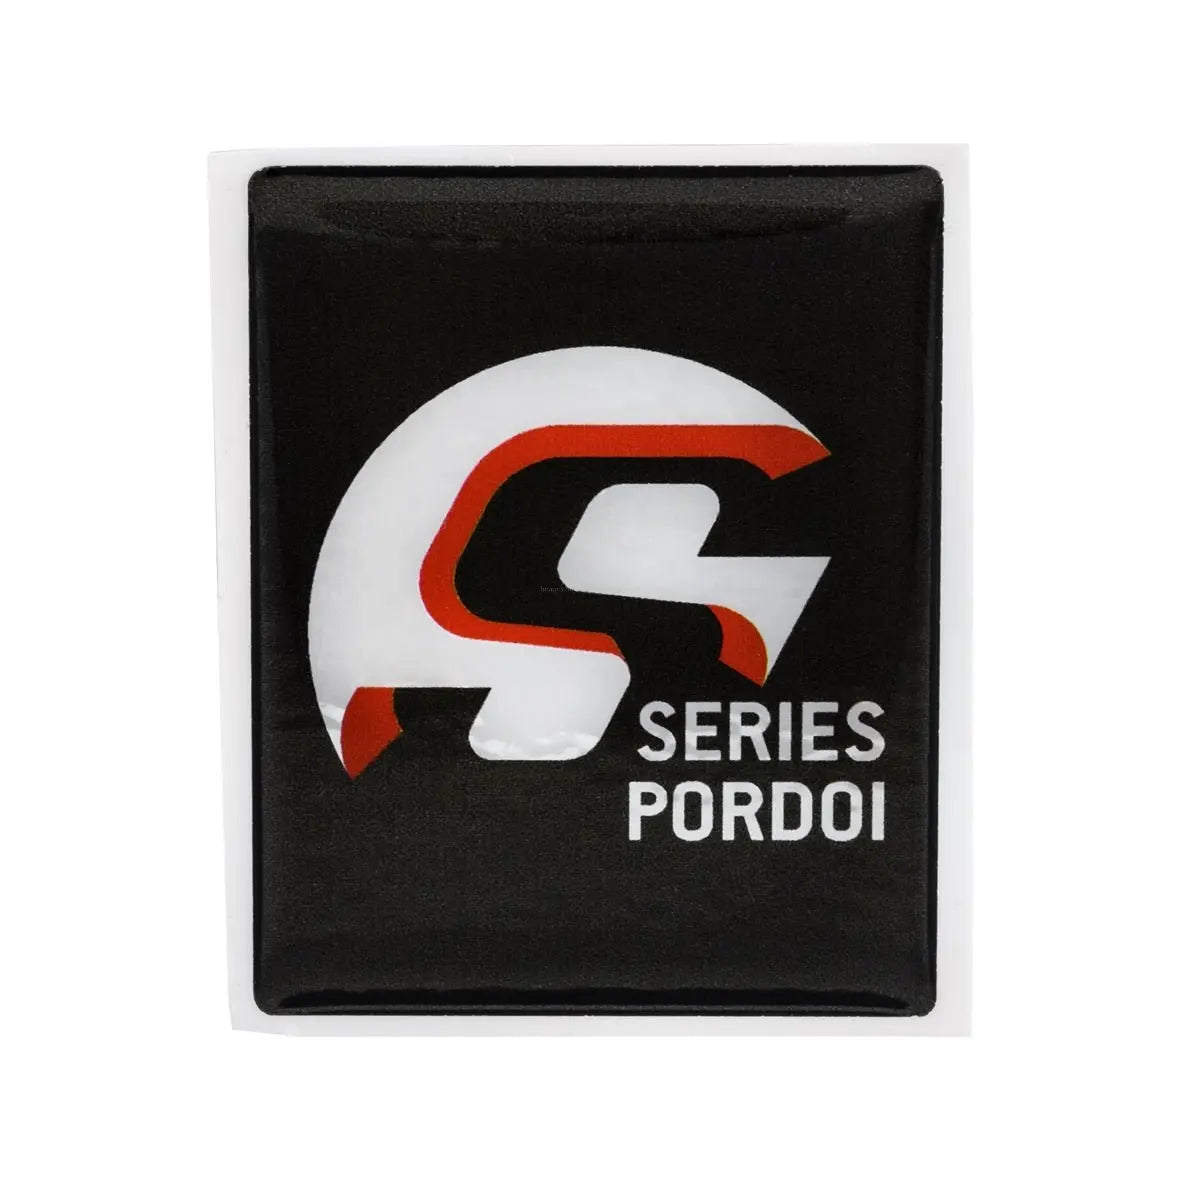 Emblem PORDOI square horn cover | Vespa LX/S/ Primavera/ Sprint/ GTS Models SIP 15.95 Falan Parts